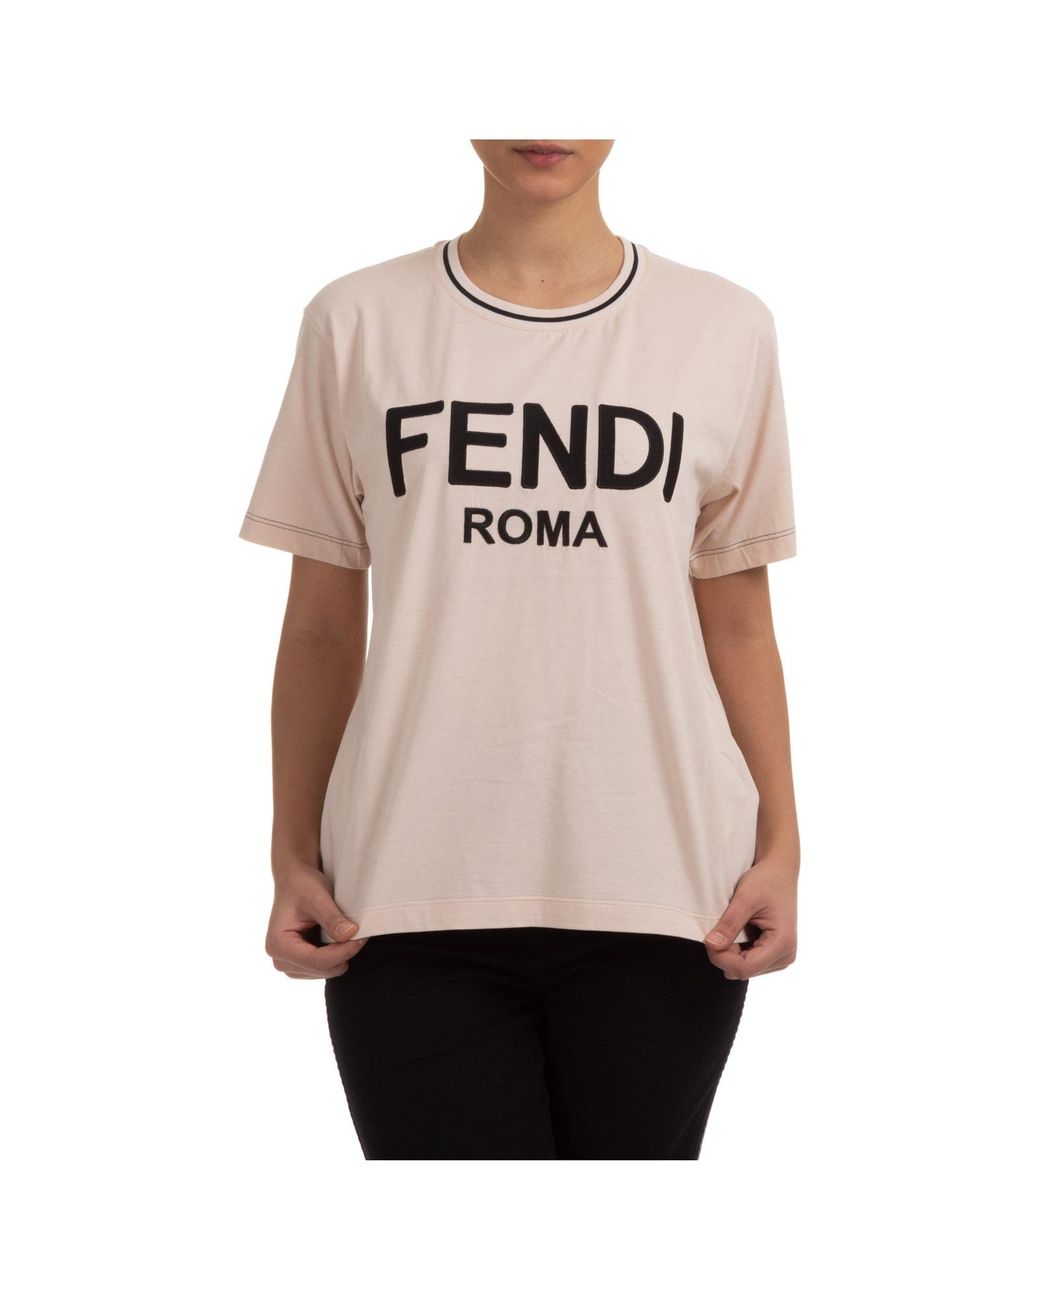 Fendi Women's T-shirt Short Sleeve Crew Neck Round in Pink - Lyst